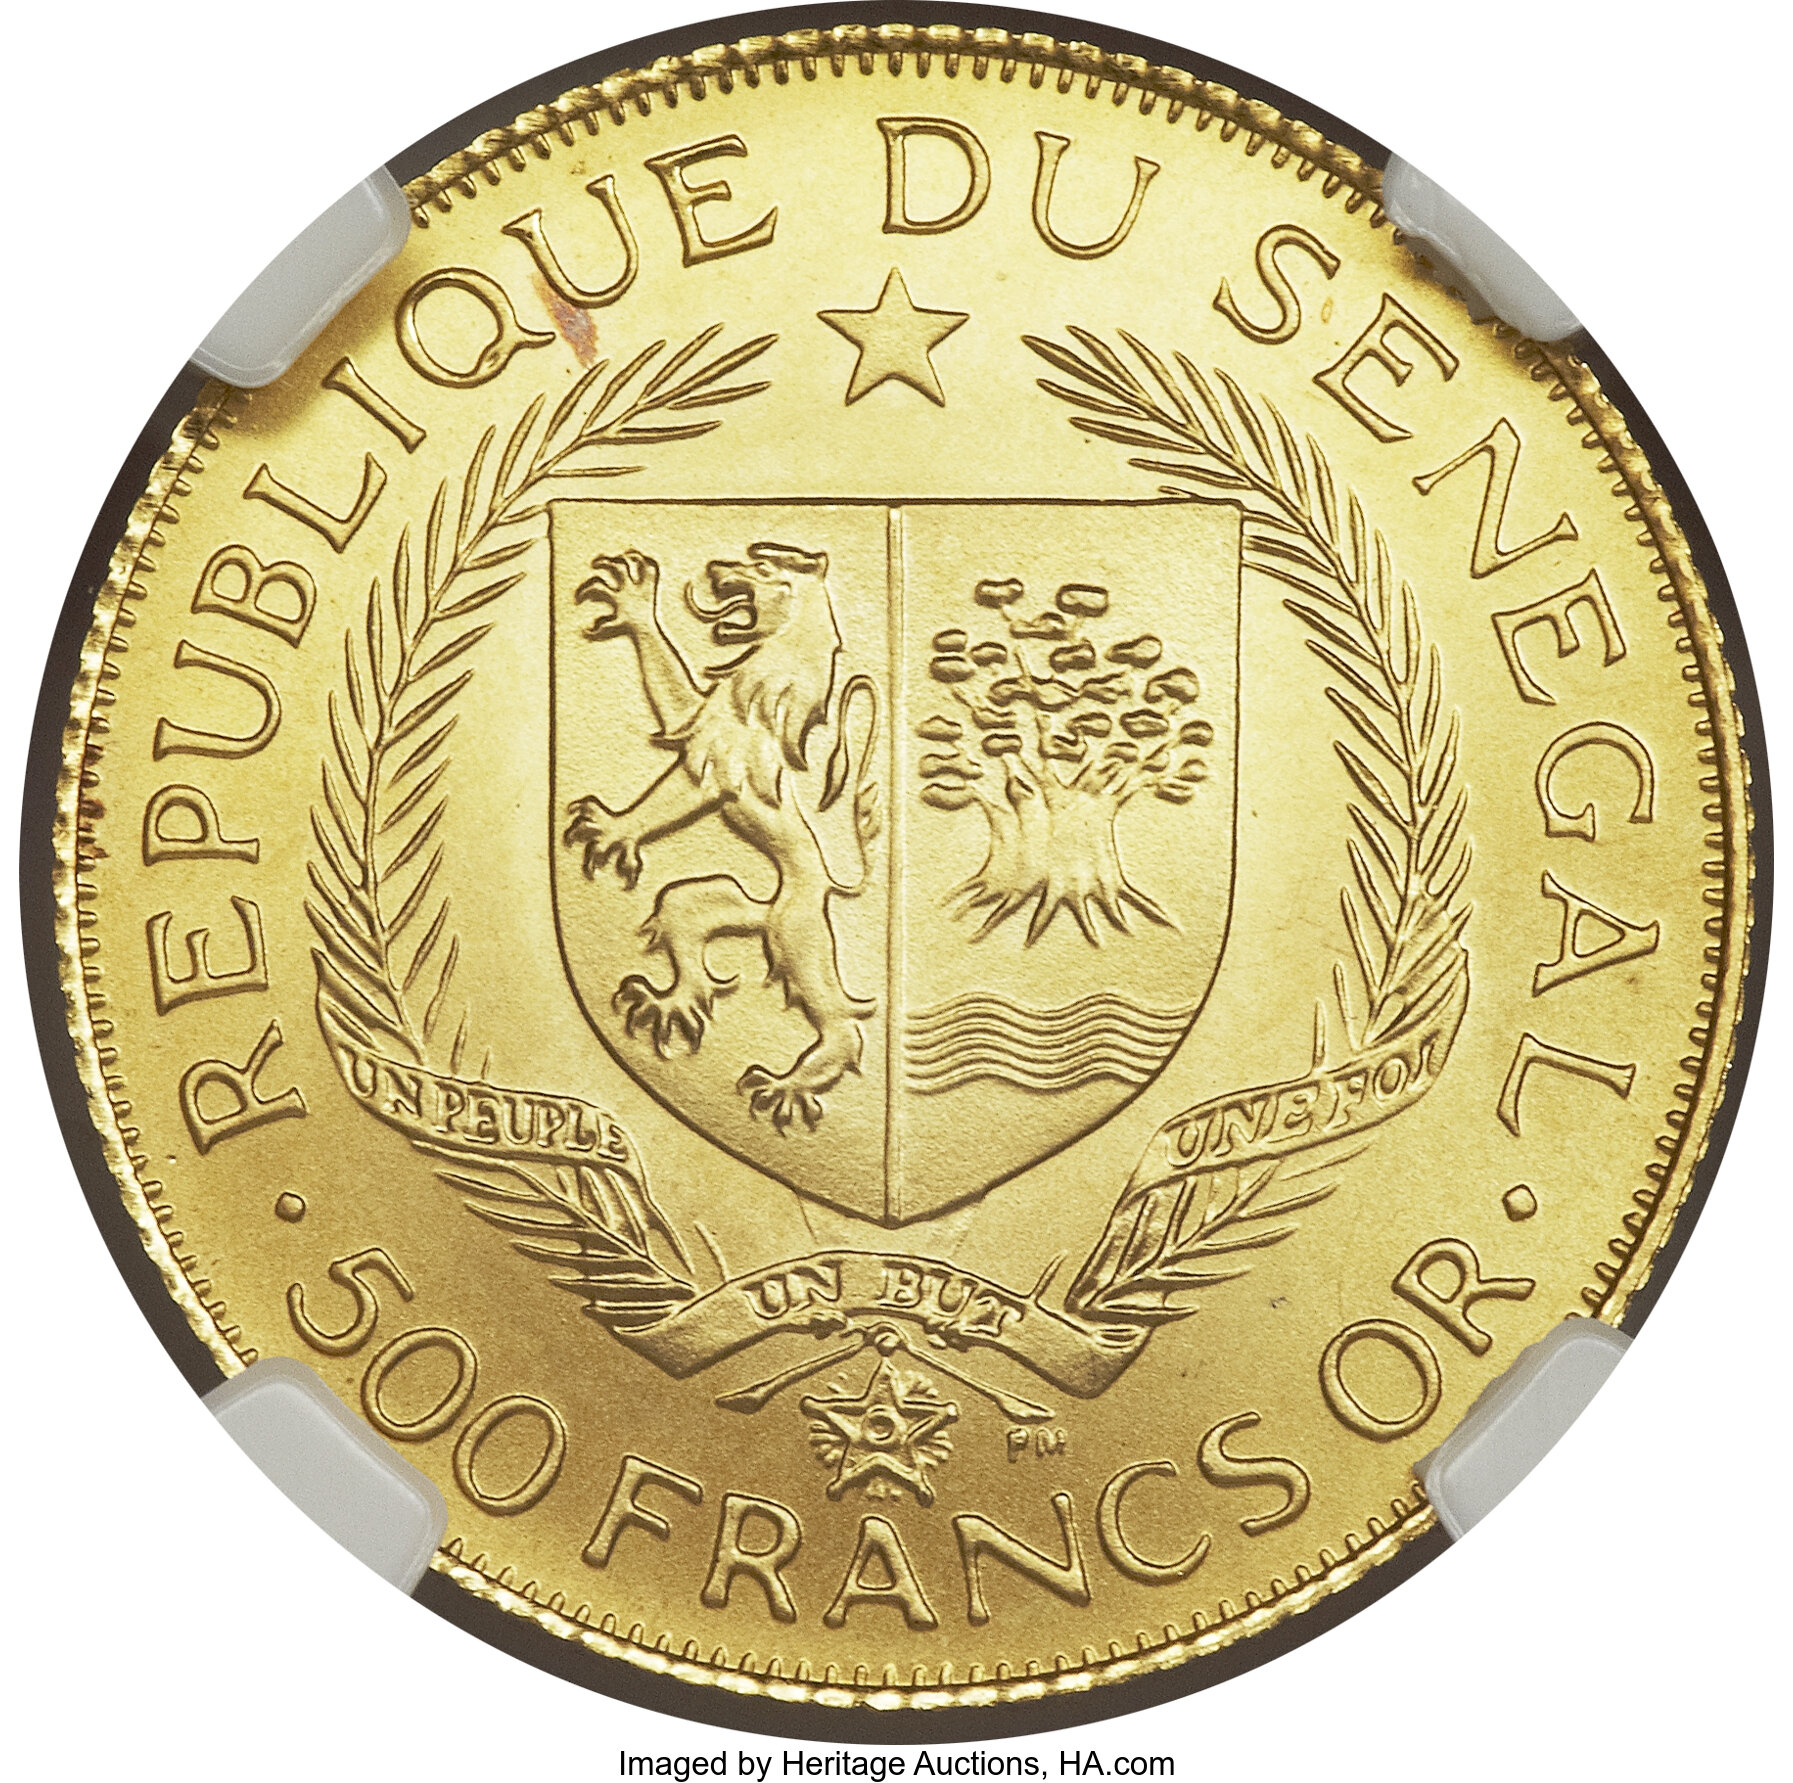 1000 francs - Galago Senegalensis